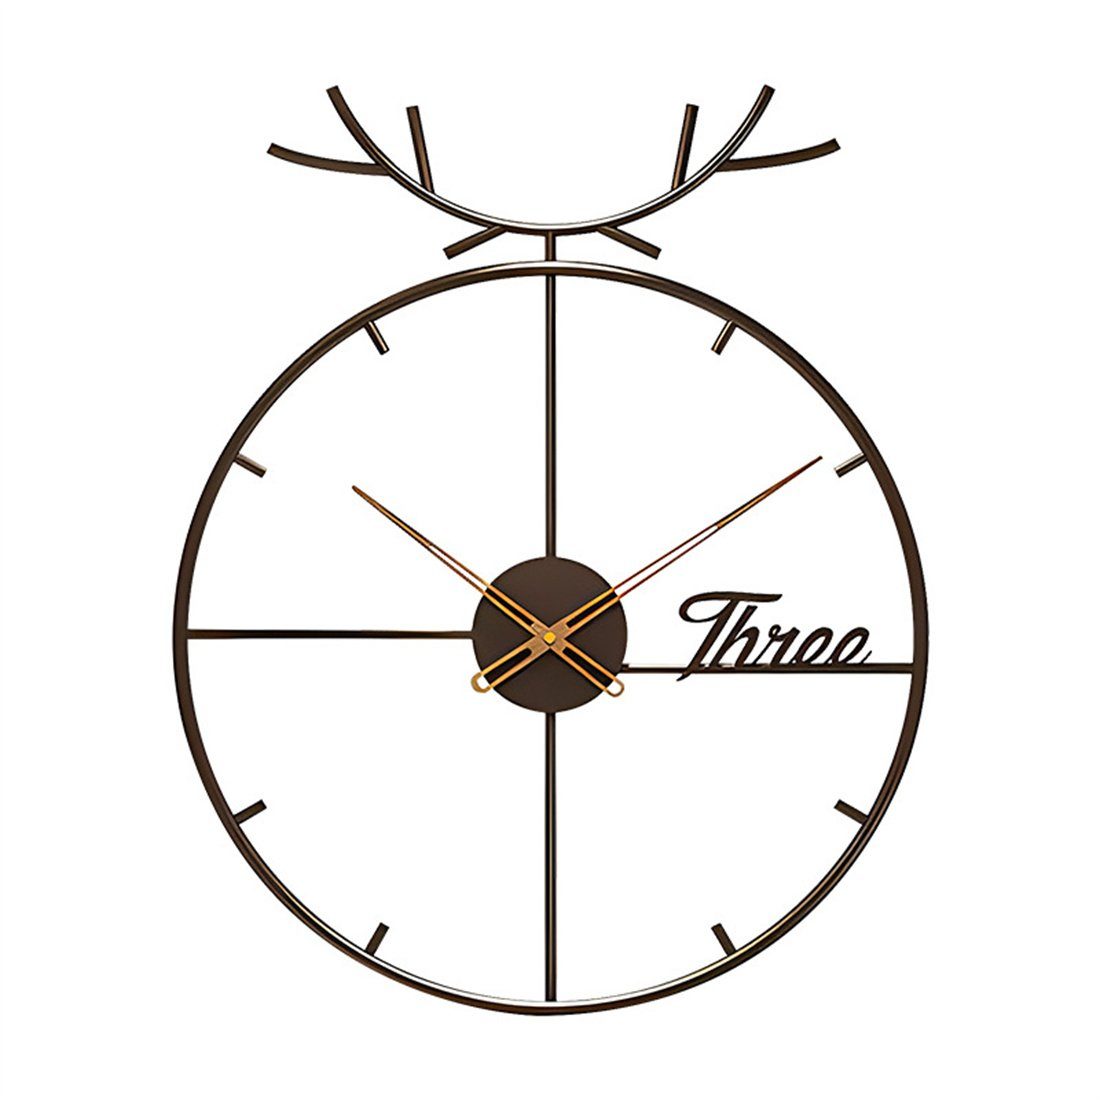 DÖRÖY Wanduhr 55cm Moderne Wanduhr dekorative Uhr mit aus Eisen stille Hirschkopf